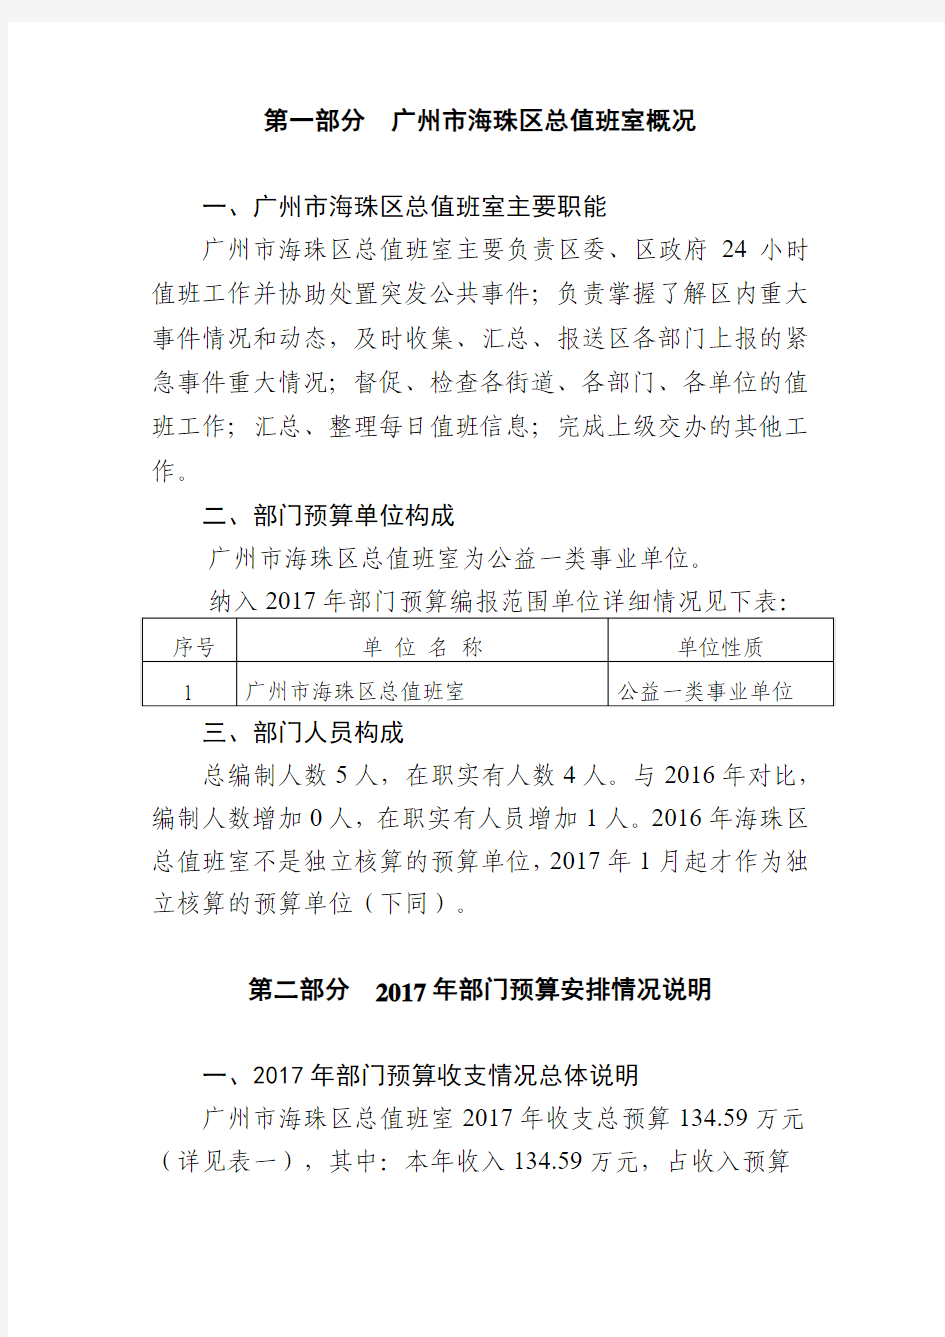 广州海珠区总值班室概况部门主要职能